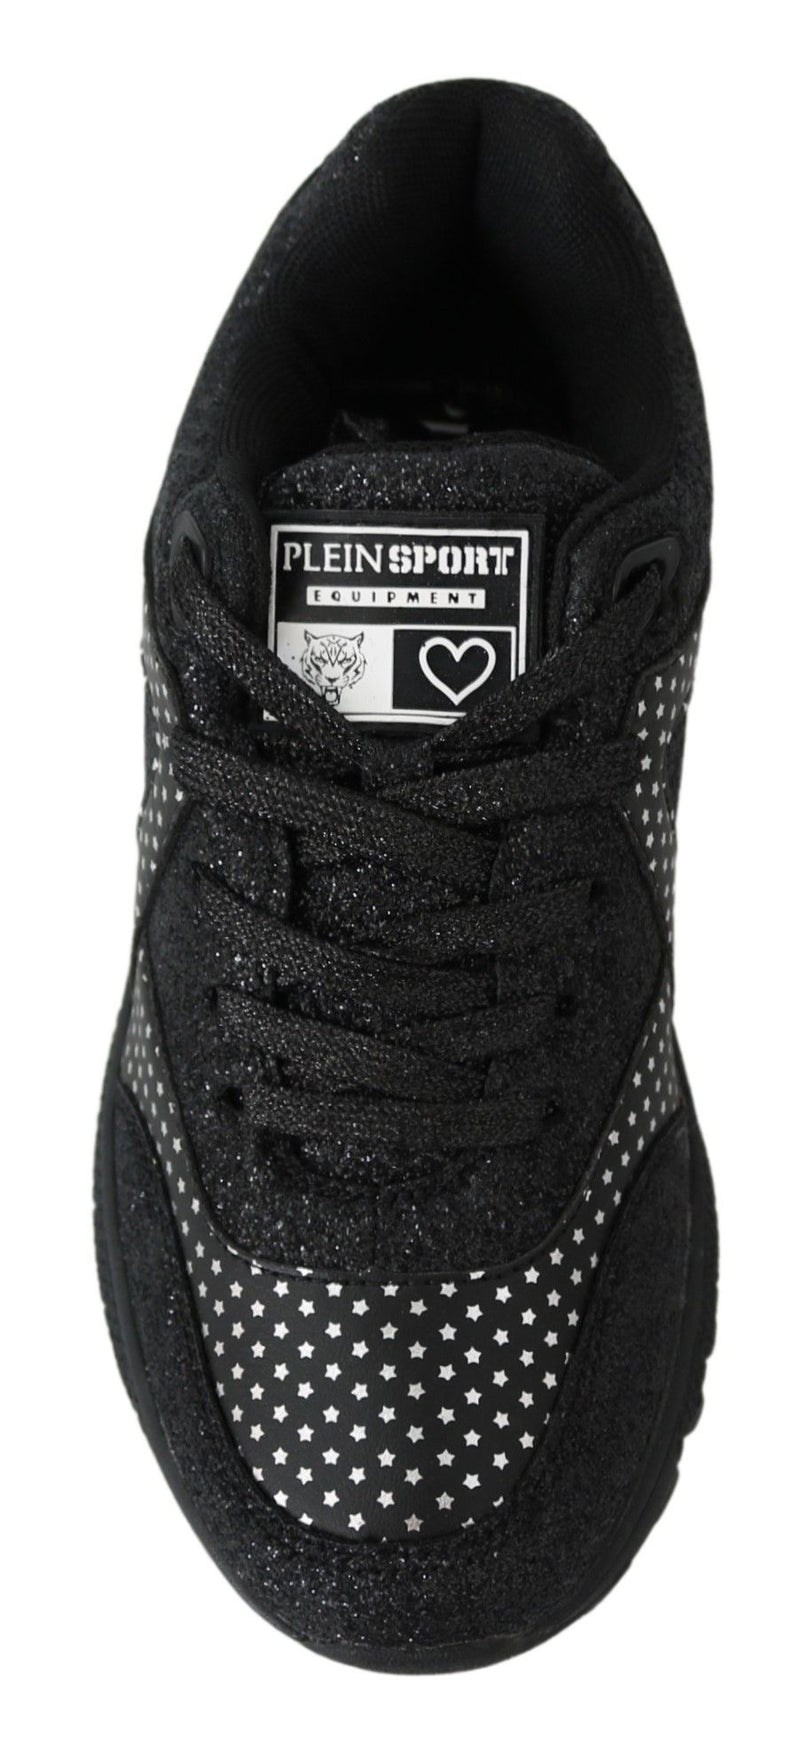 Plein Sport Elegant Black Runner Jasmines Sport Women's Shoes